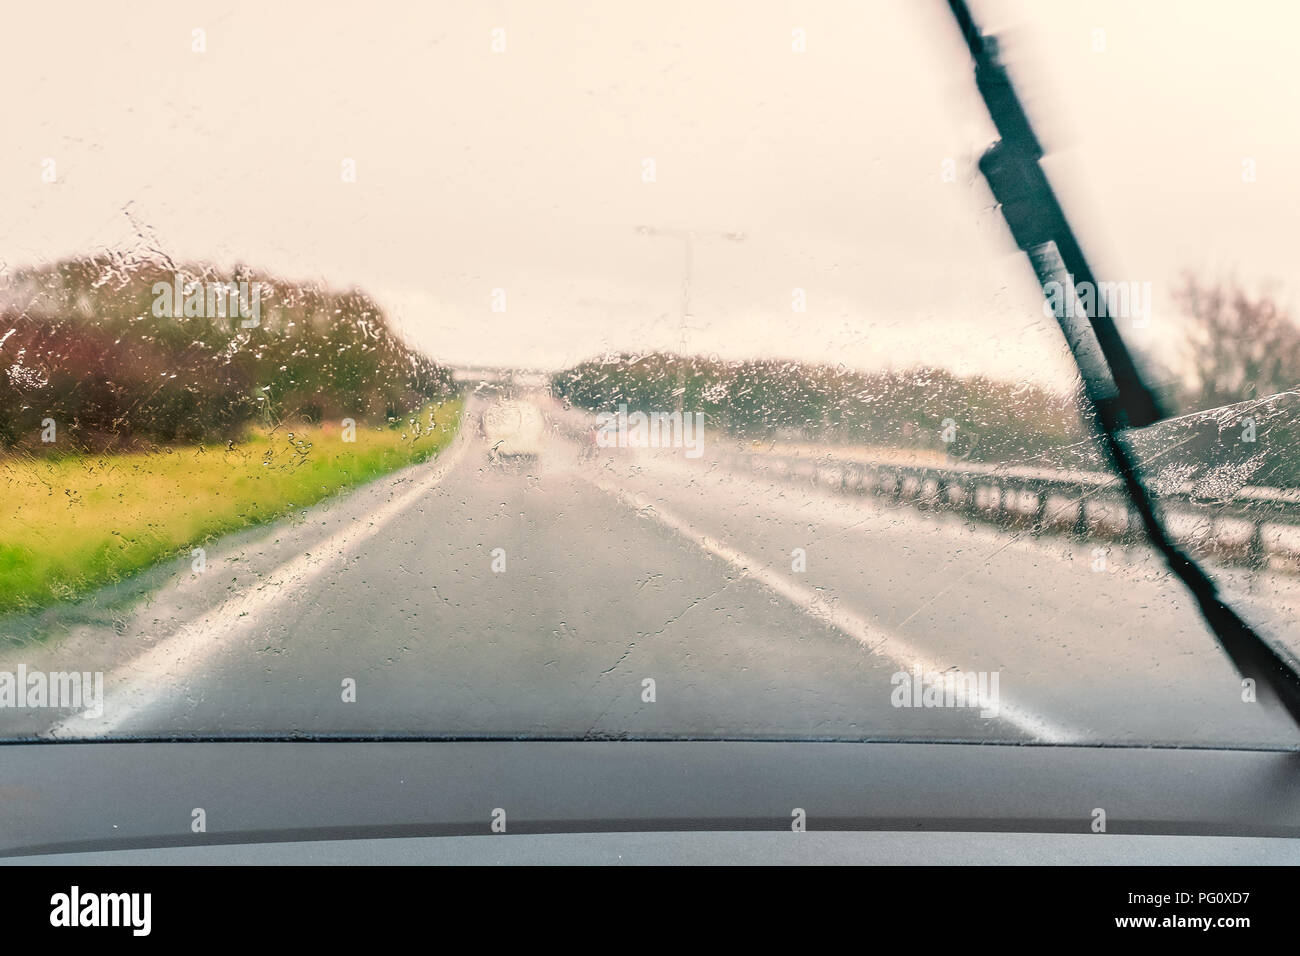 Road vu à travers un pare-brise humide pendant la conduite sous la pluie. Un essuie-glace peut être vu se déplaçant à travers le pare-brise Banque D'Images